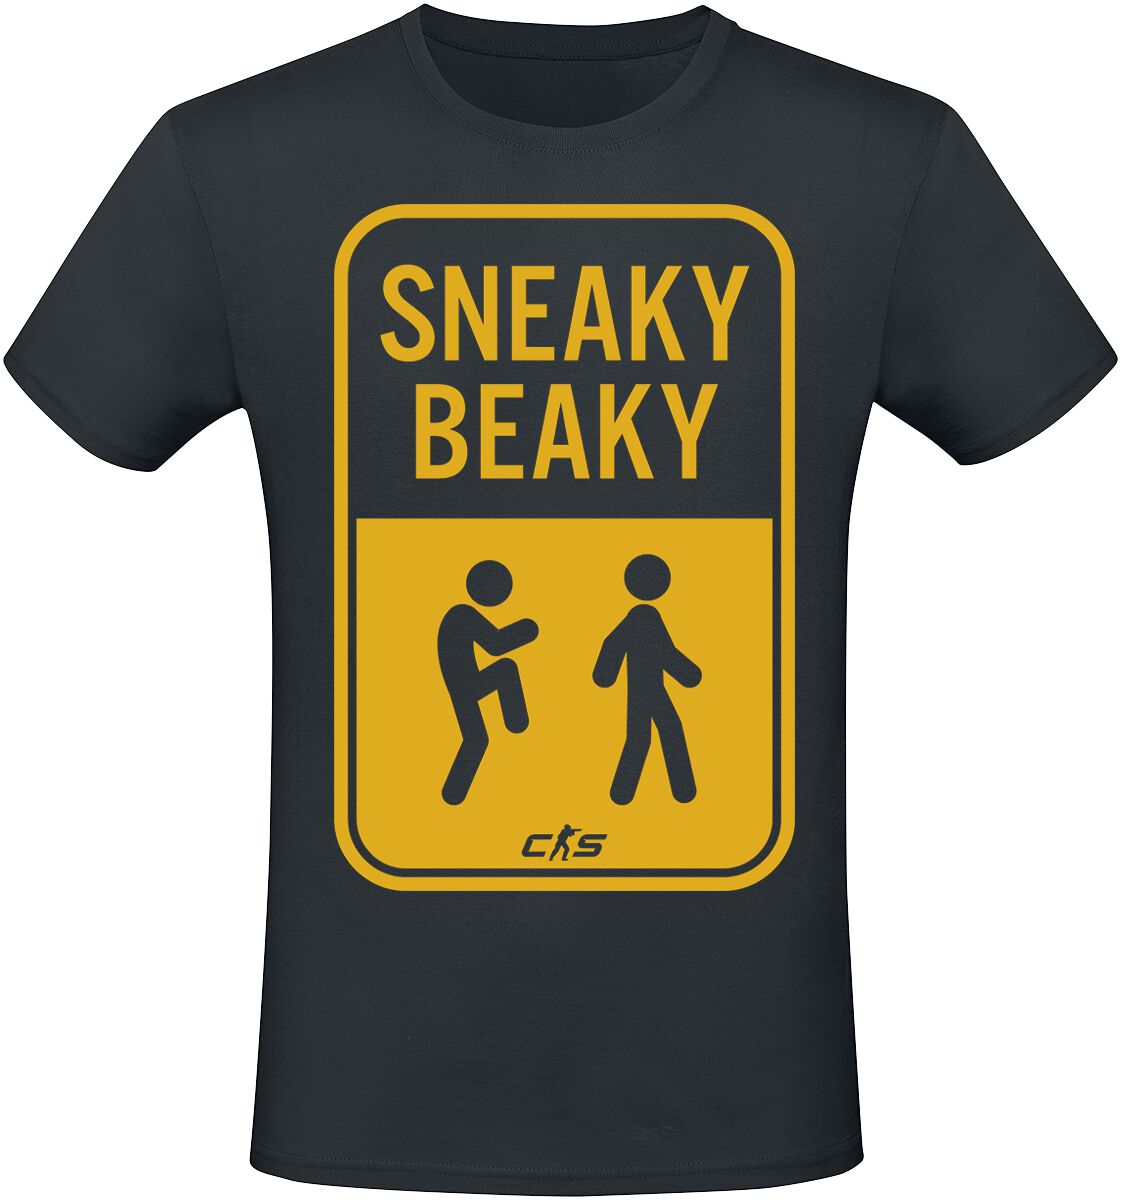 Counter-Strike - Gaming T-Shirt - 2 - Sneaky Beaky - S bis XXL - für Männer - Größe M - schwarz  - EMP exklusives Merchandise! von Counter-Strike